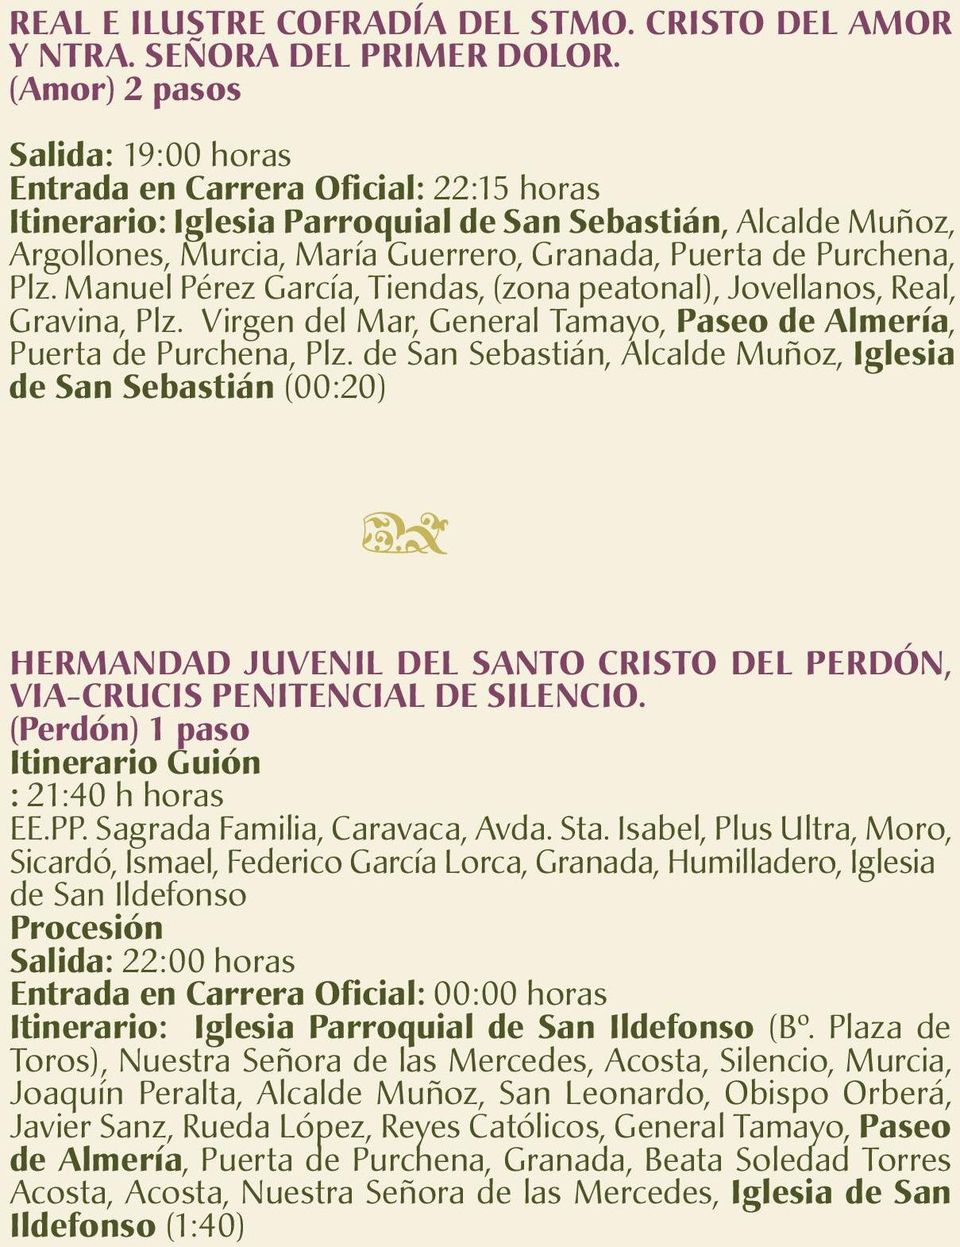 Purchena, Plz. Manuel Pérez García, Tiendas, (zona peatonal), Jovellanos, Real, Gravina, Plz. Virgen del Mar, General Tamayo, Paseo de Almería, Puerta de Purchena, Plz.